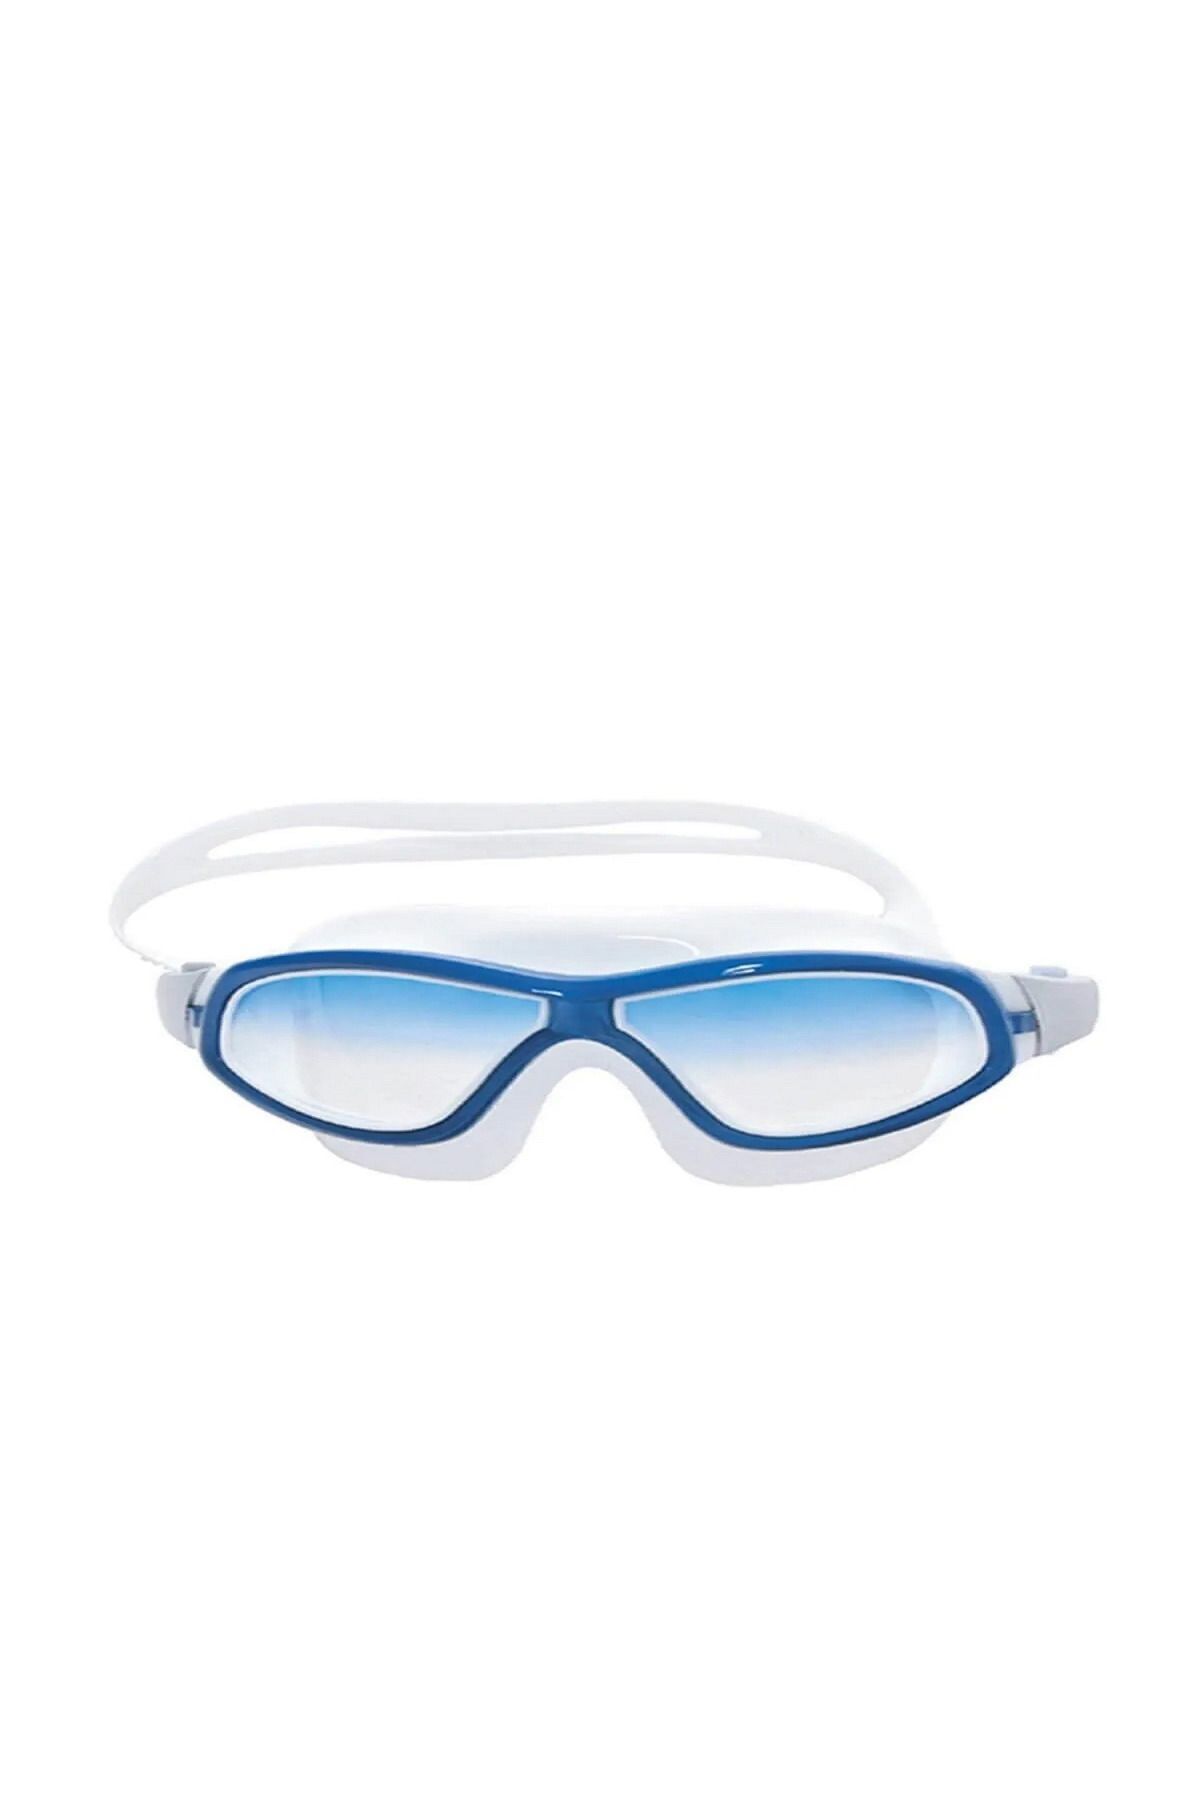 Voit Grand Yüzücü Gözlüğü Mavi